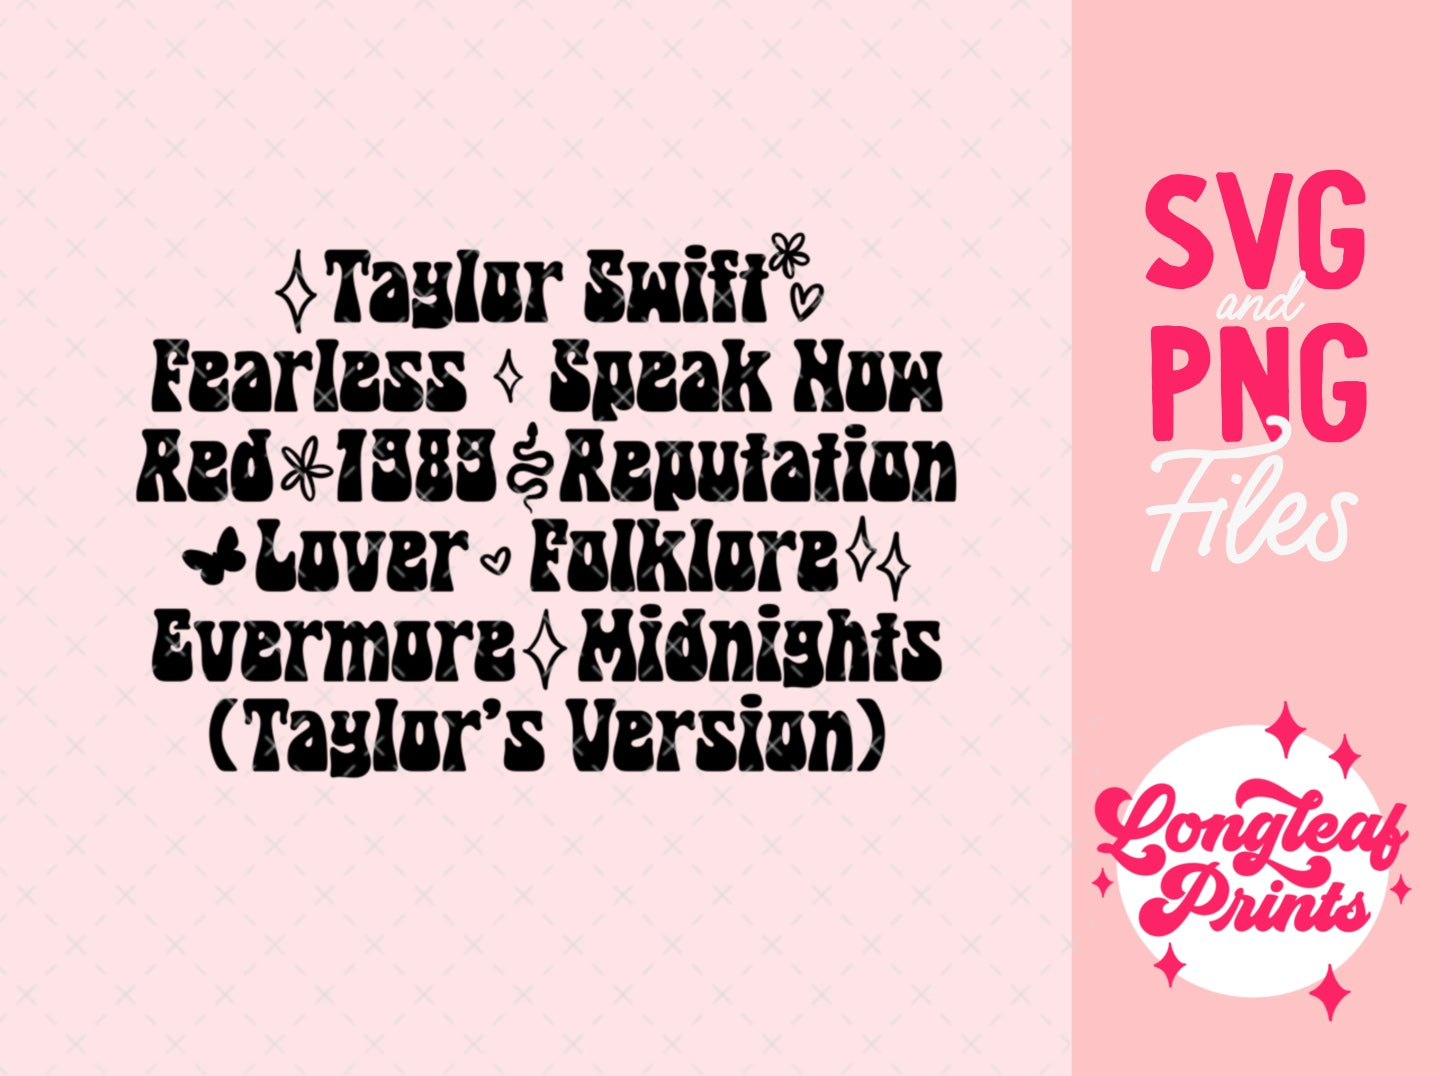 Taylor Swift Album SVG Digital Download Design File